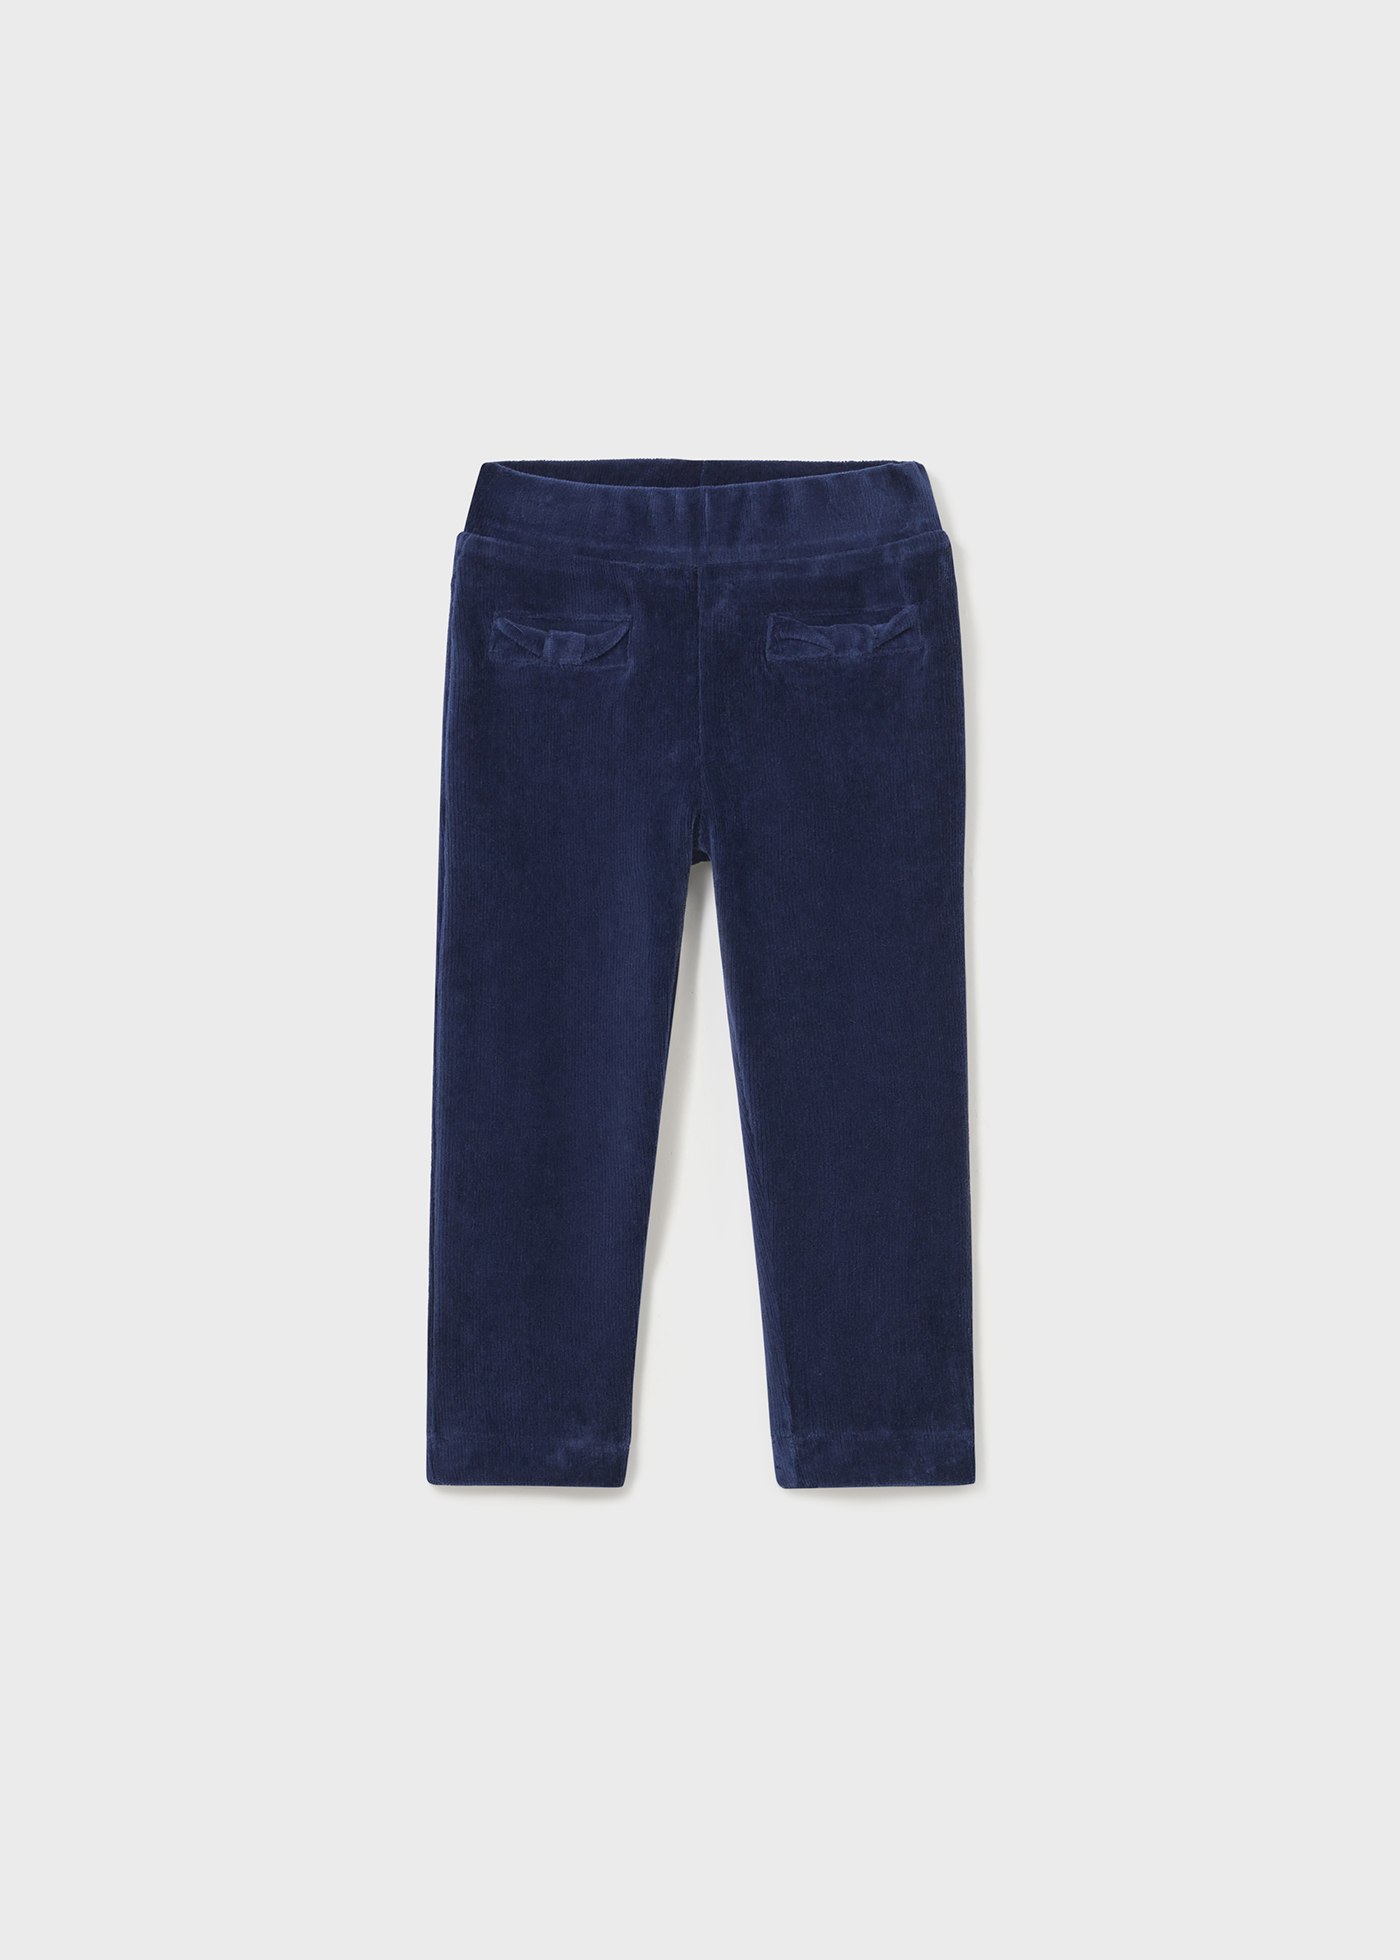 Baby corduroy pants skinny fit | Mayoral ®